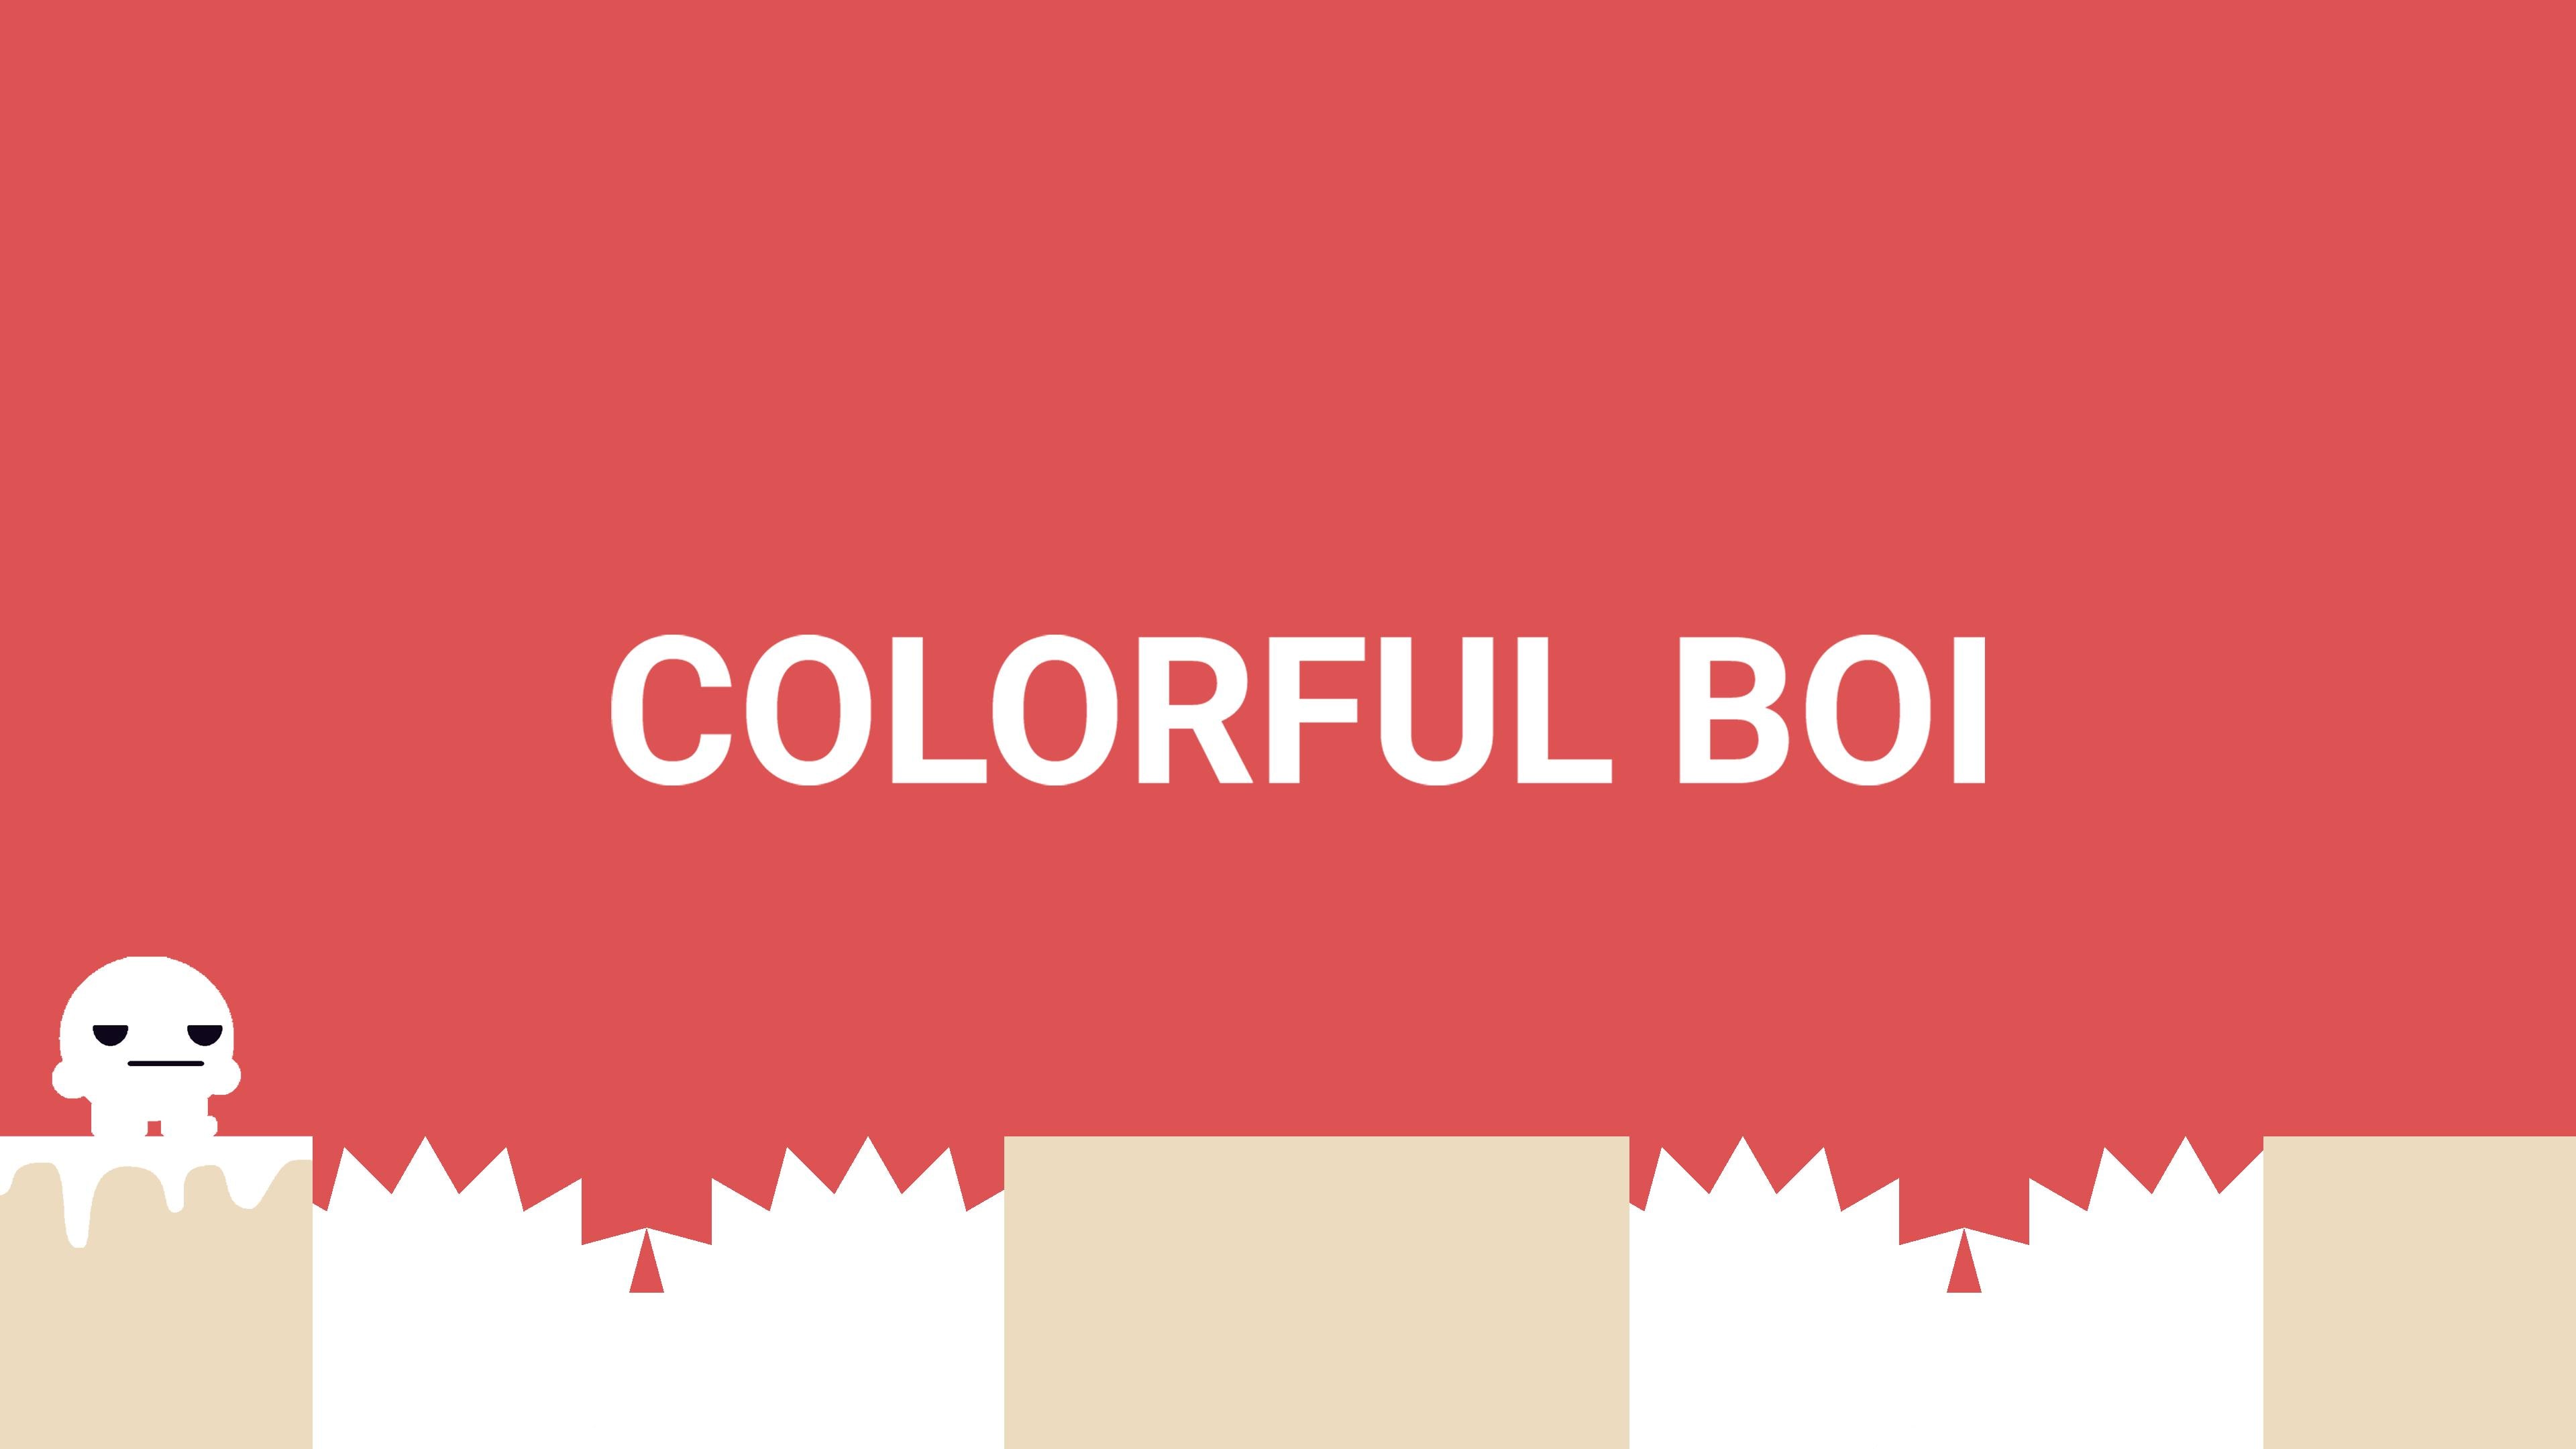 Colorful Boi (English)